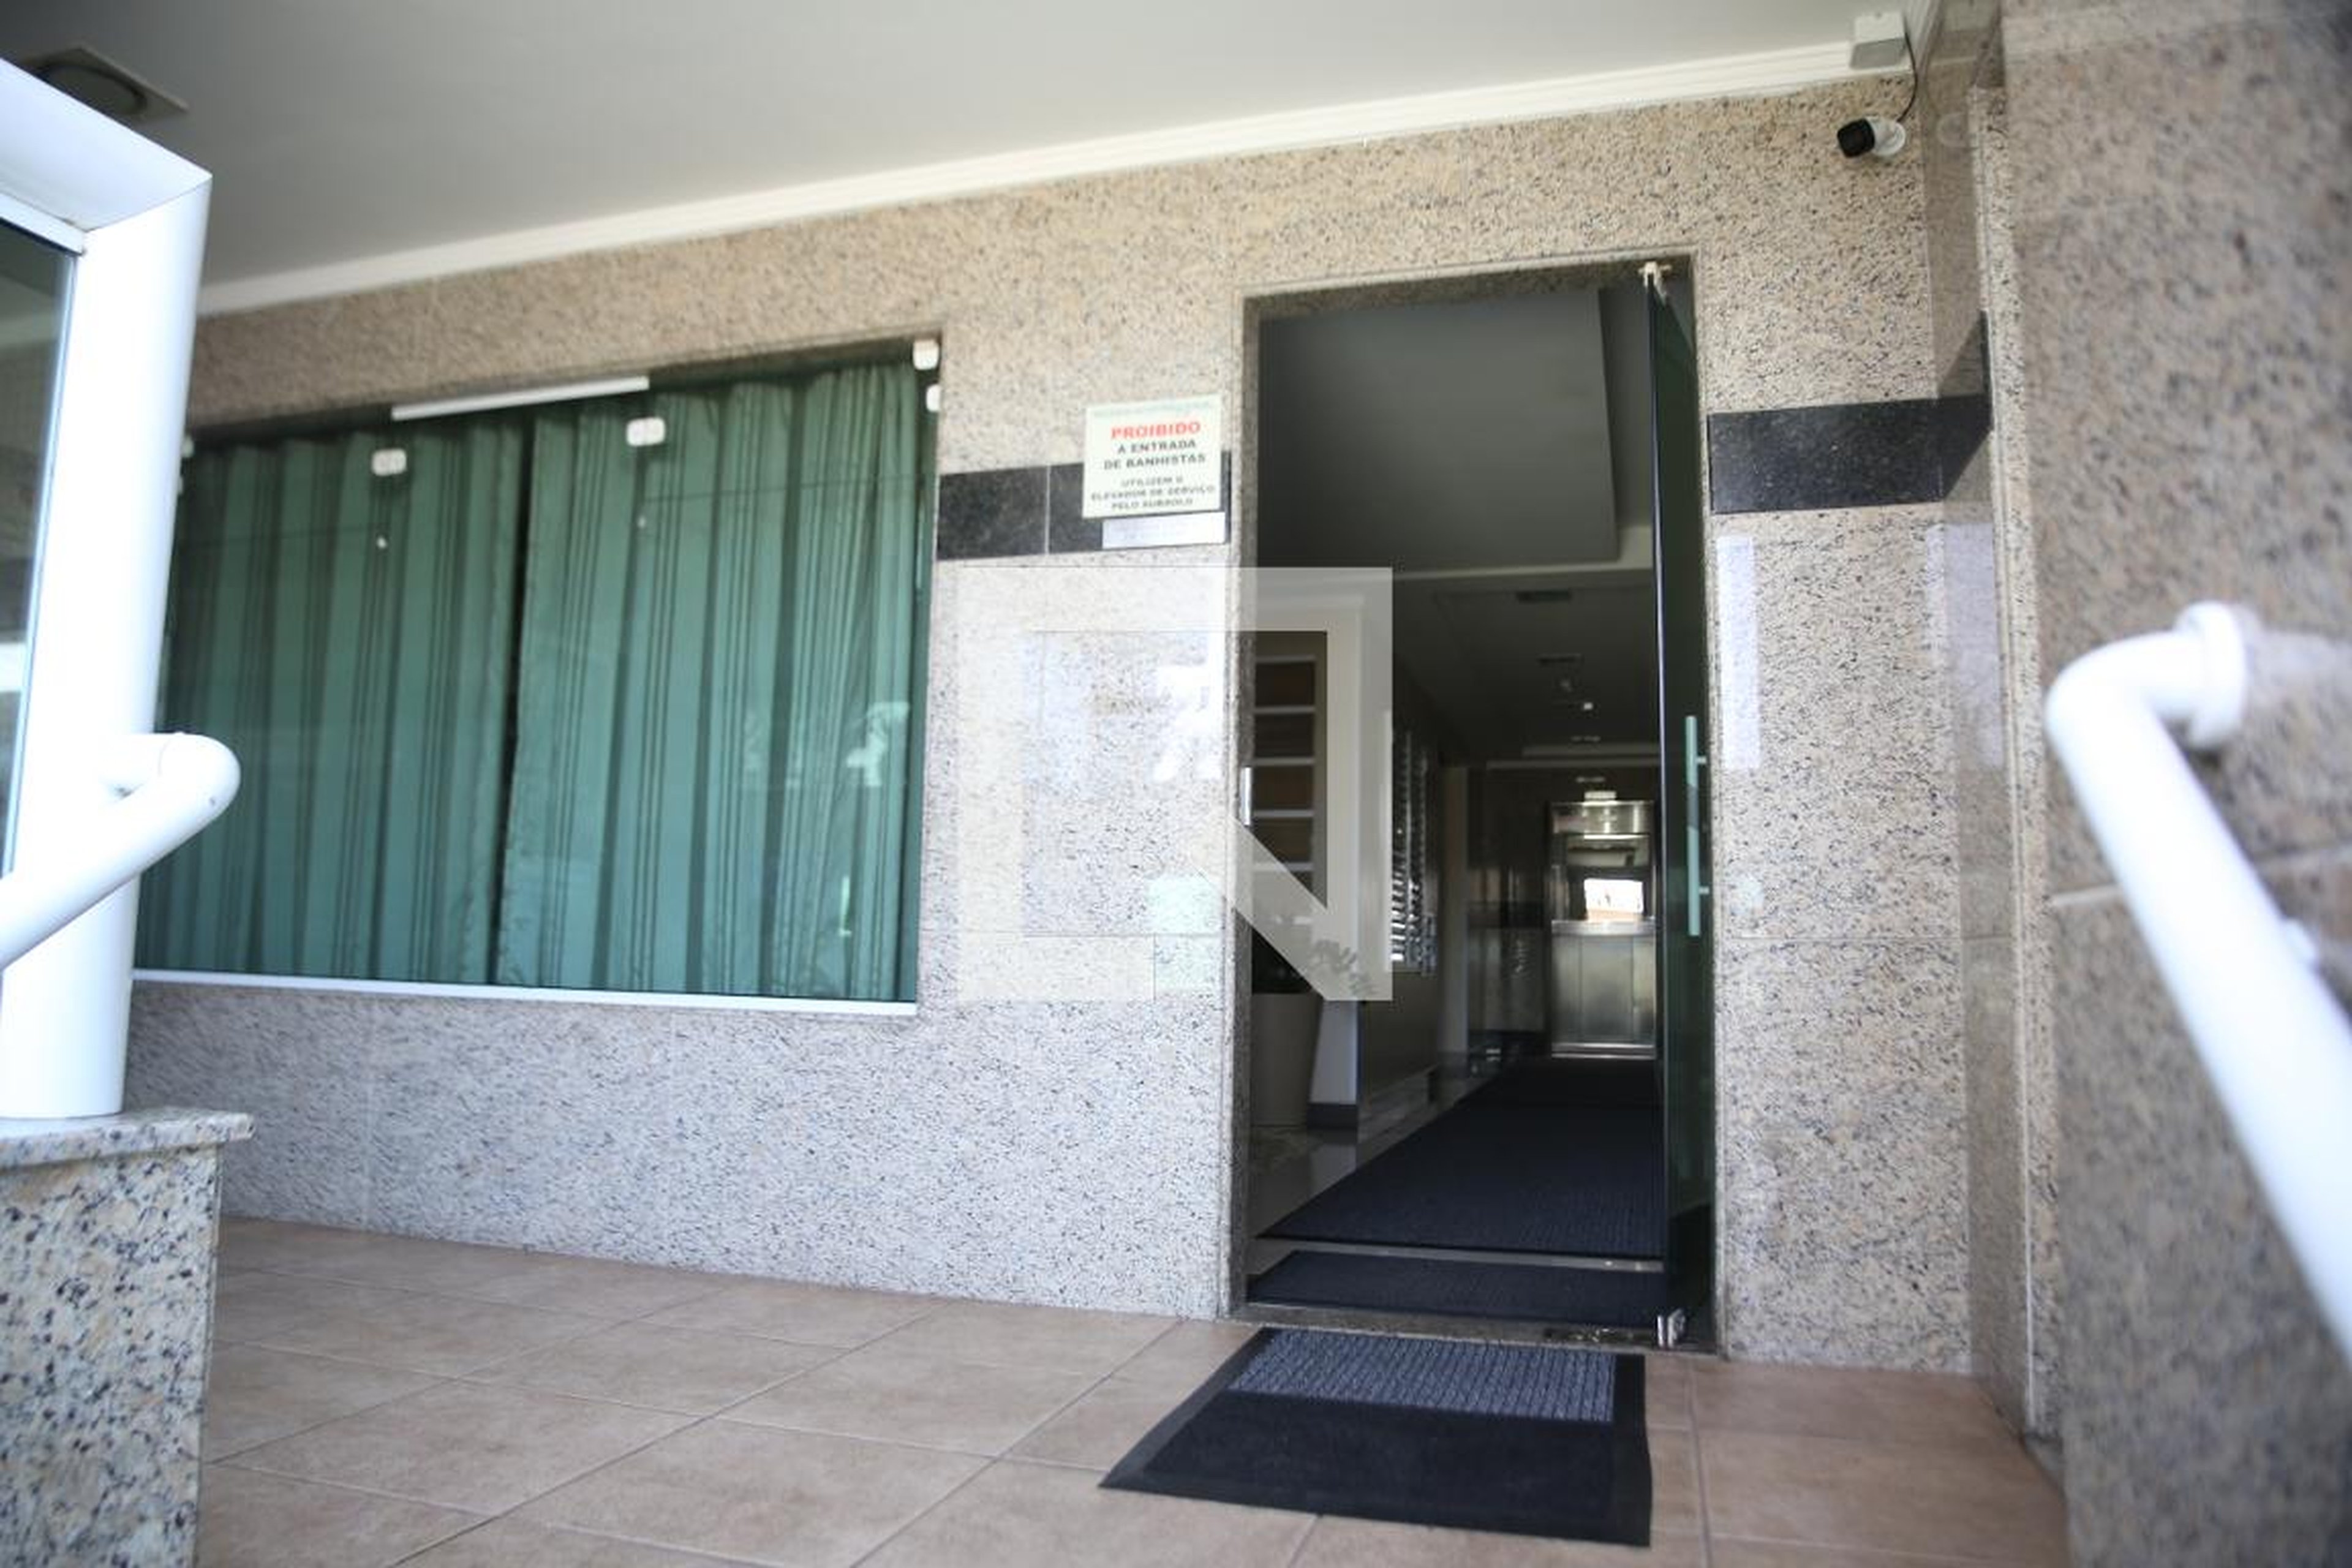 Entrada - Edifício Residencial Pitangueira